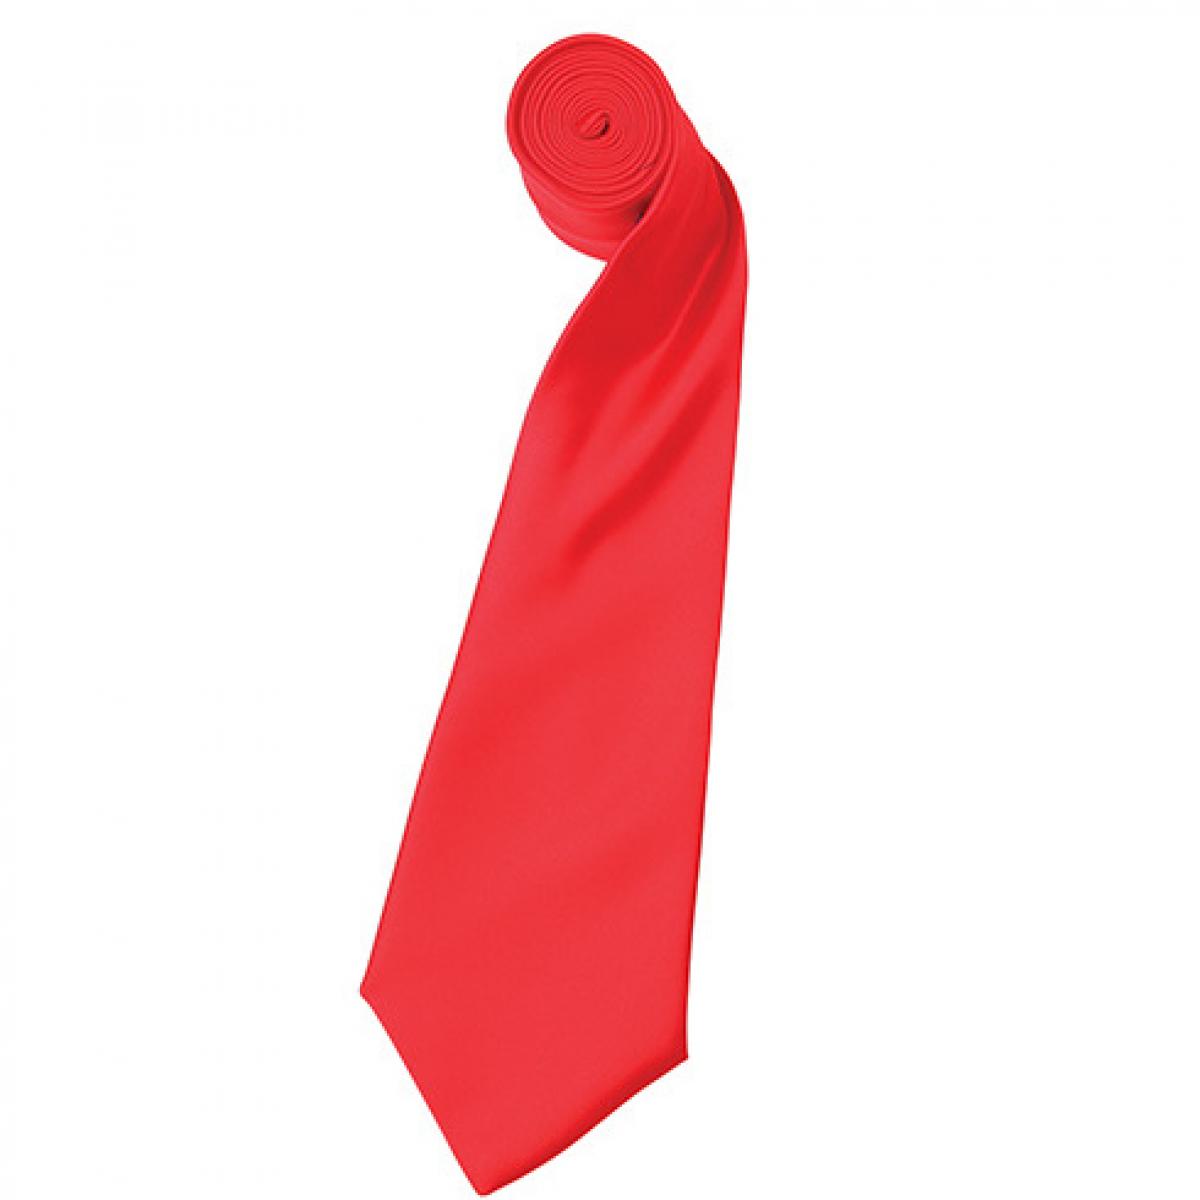 Hersteller: Premier Workwear Herstellernummer: PR750 Artikelbezeichnung: Satin Tie ´Colours´ / 144 x 8,5 cm Farbe: Strawberry Red (ca. Pantone 186)